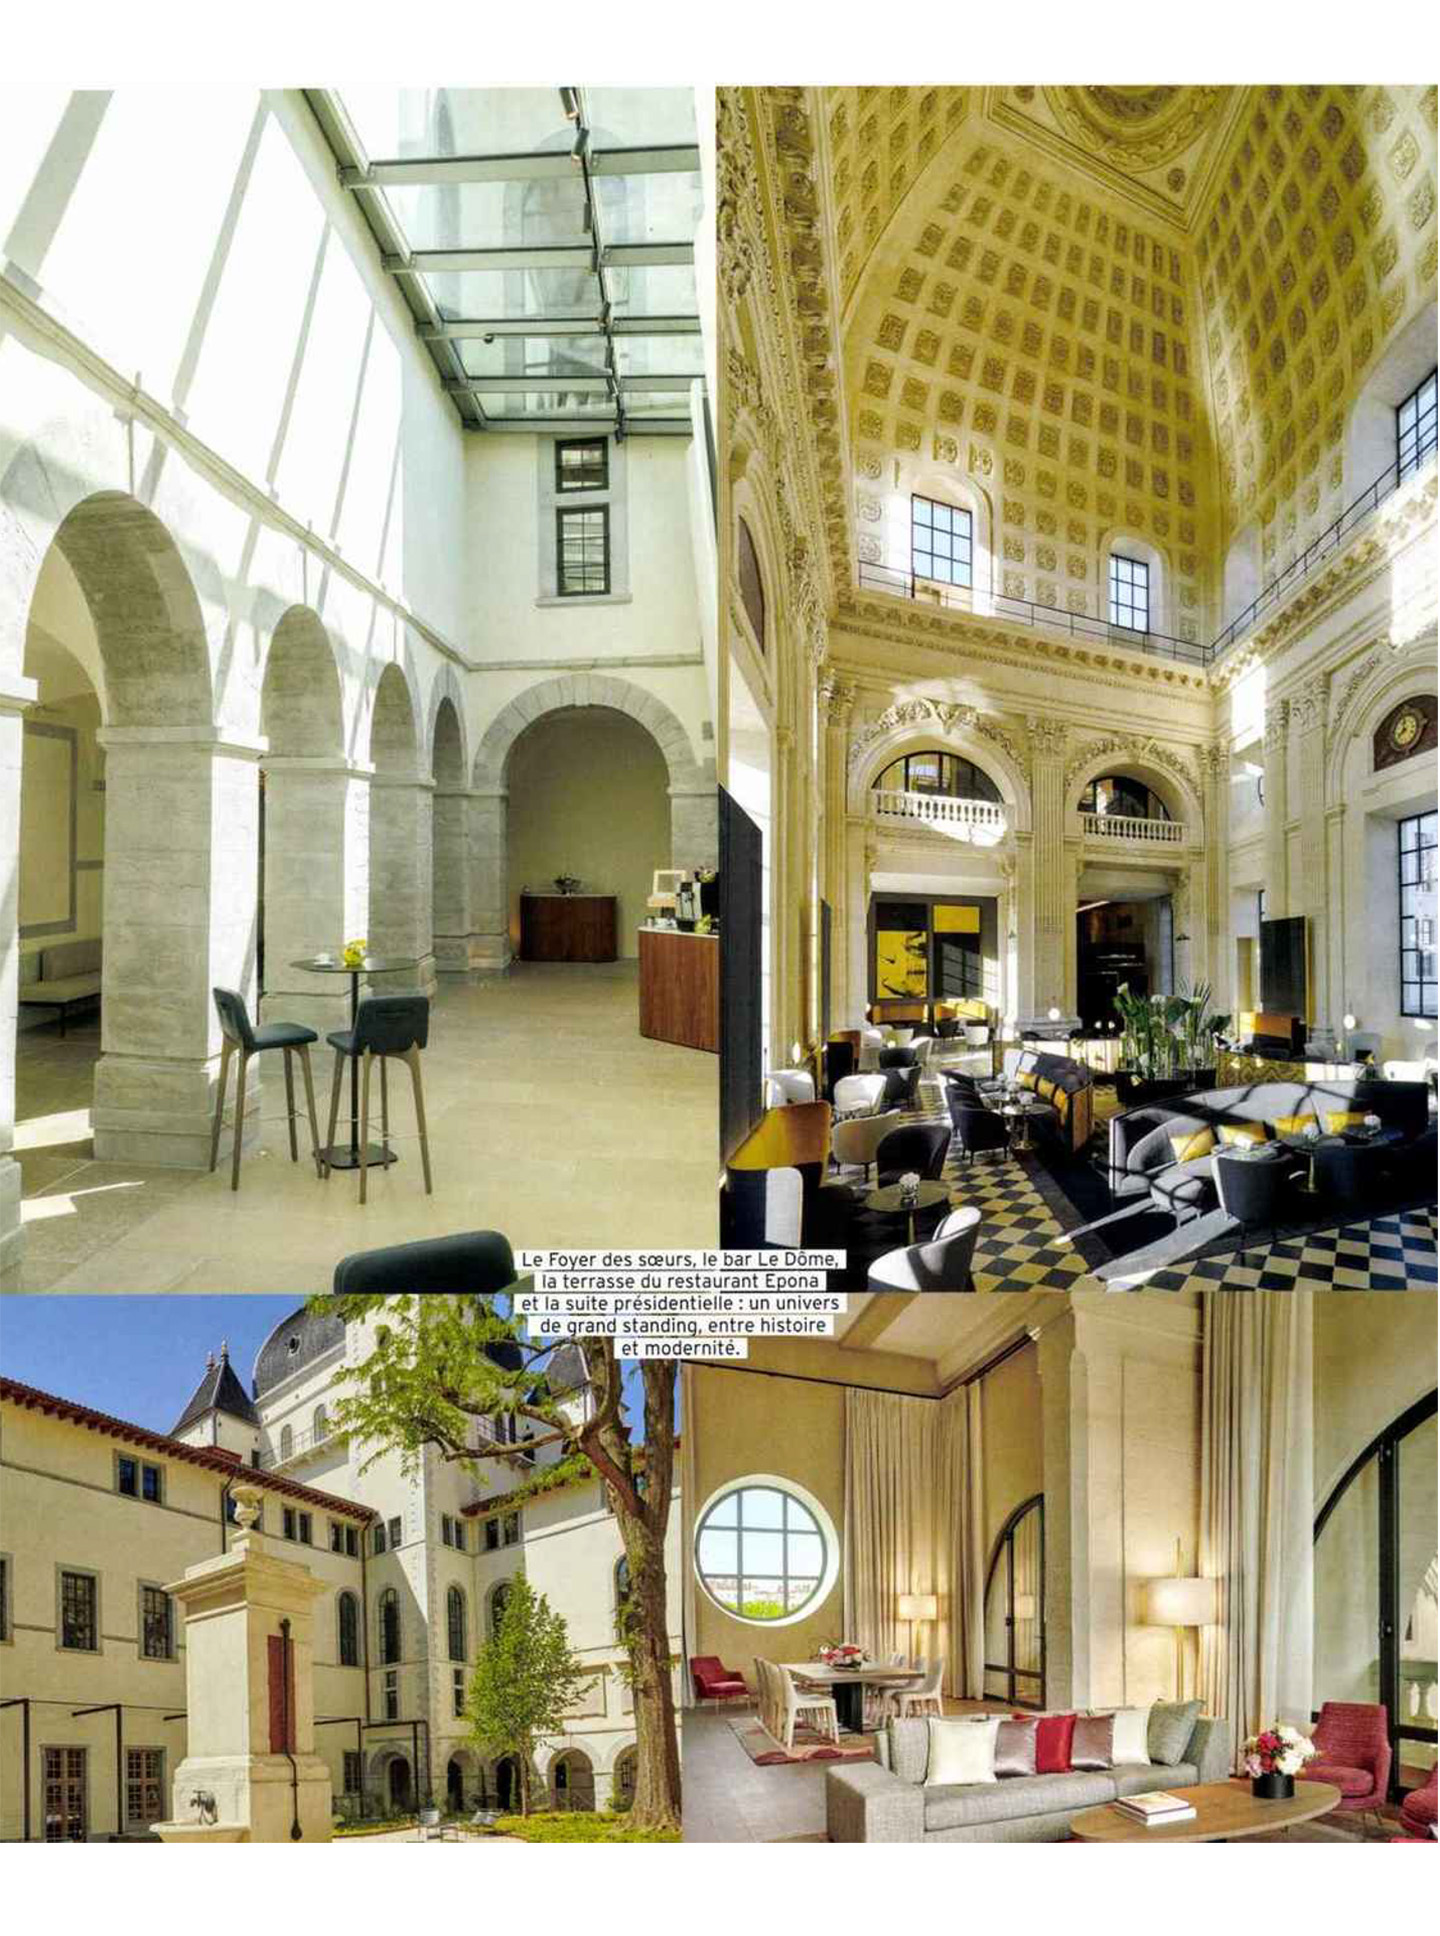 article sur l'InterContinental Lyon Hotel dieu, hotel de luxe 5 étoiles designé par l'architecte jean-philippe nuel